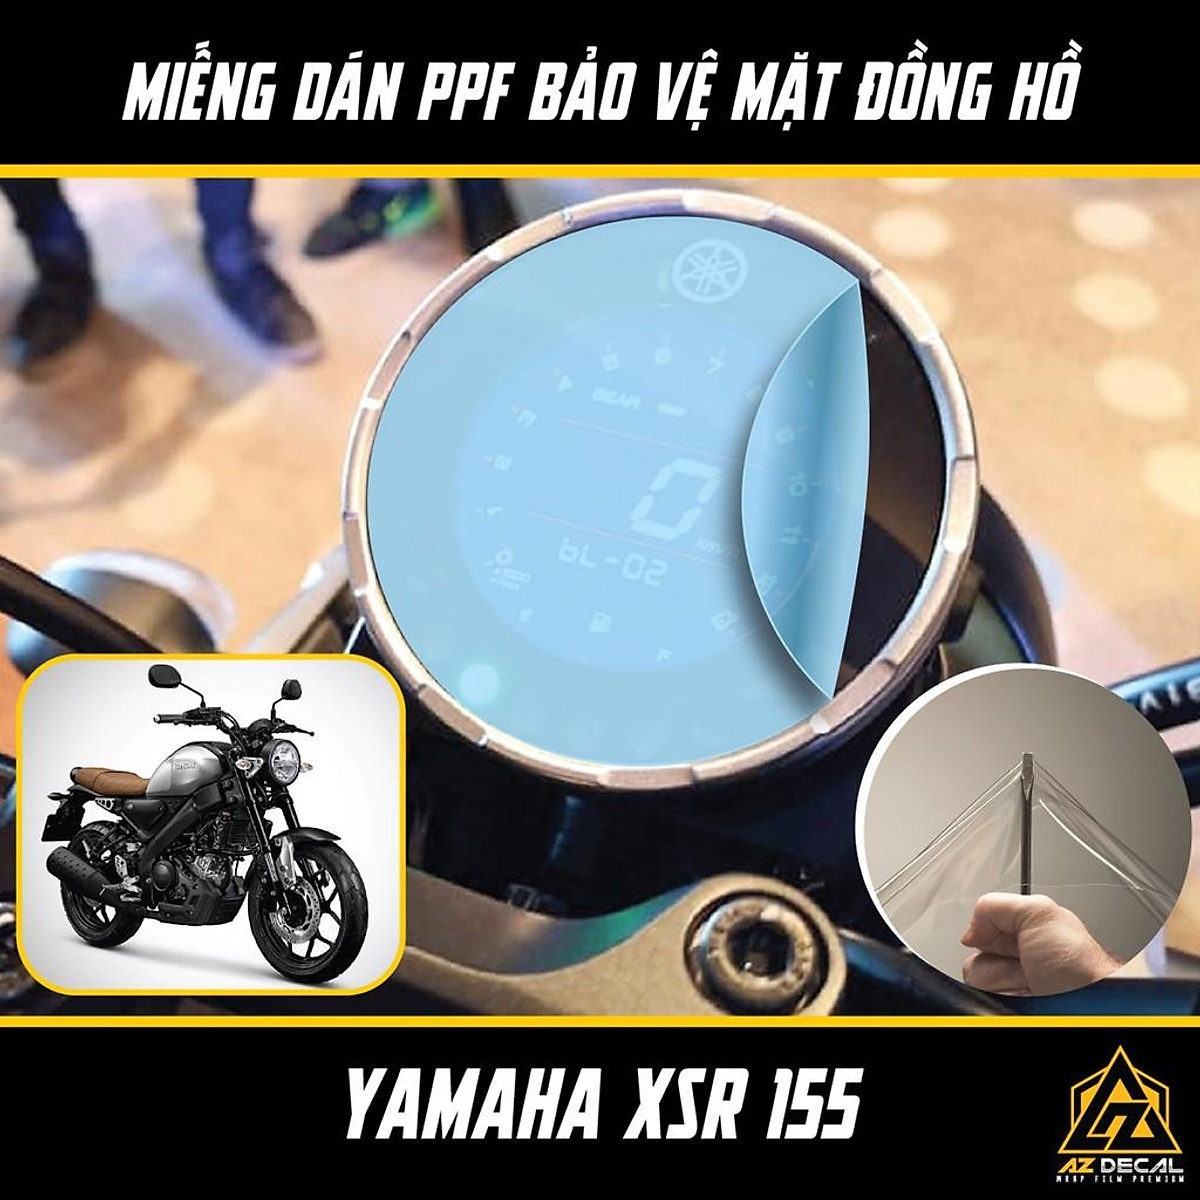 Yamaha XSR 155 chính hãng chuẩn bị về Việt Nam với giá 90 triệu đồng